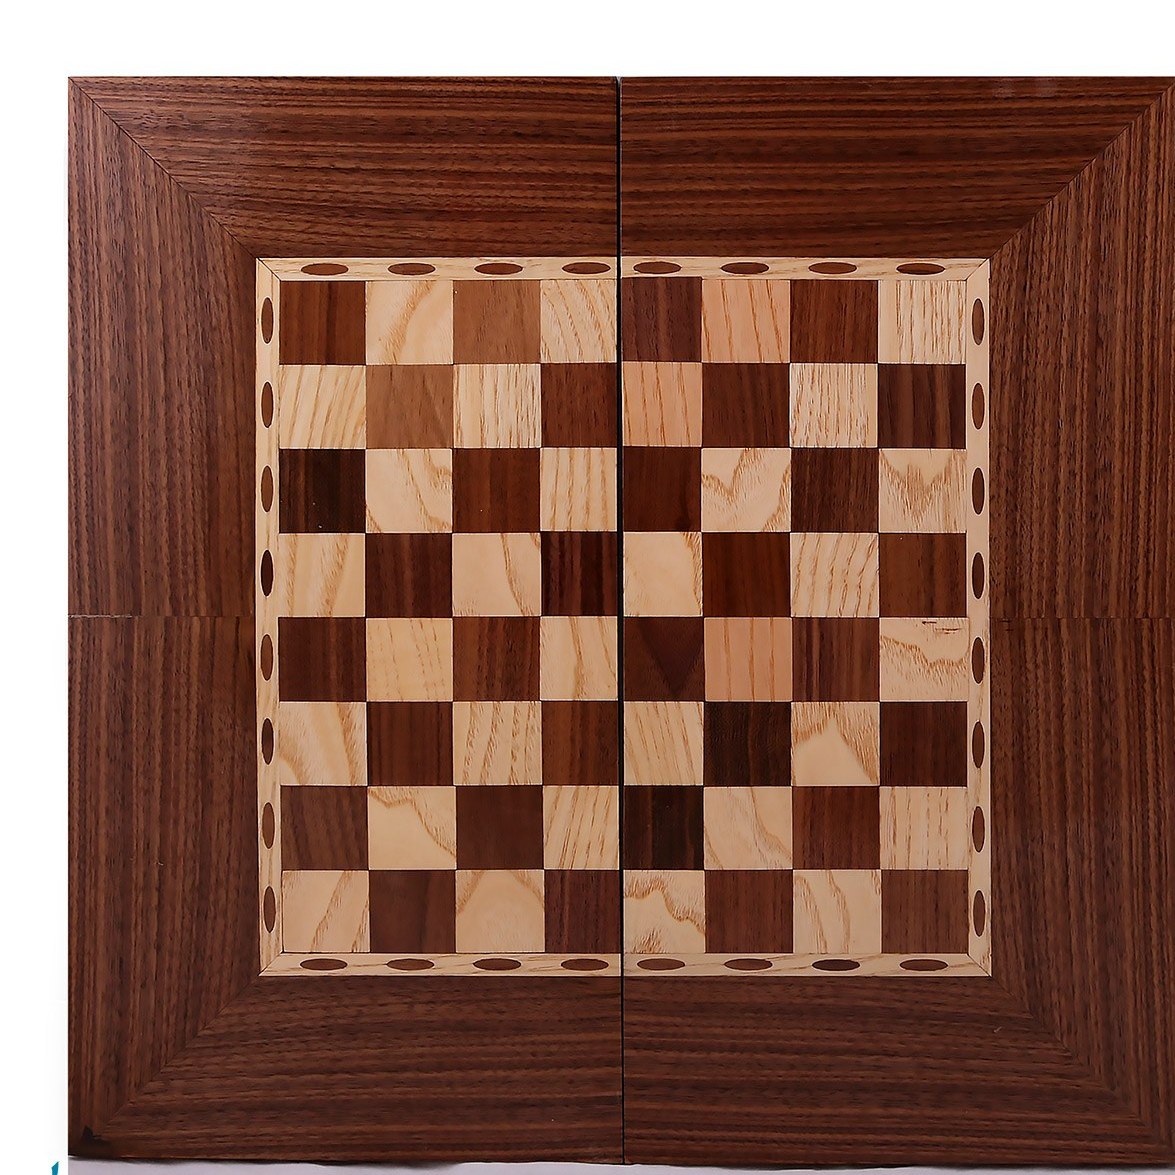 تصویر تخته نرد و شطرنج با روکش گردو سایز ۵۰ در ۵۰ 